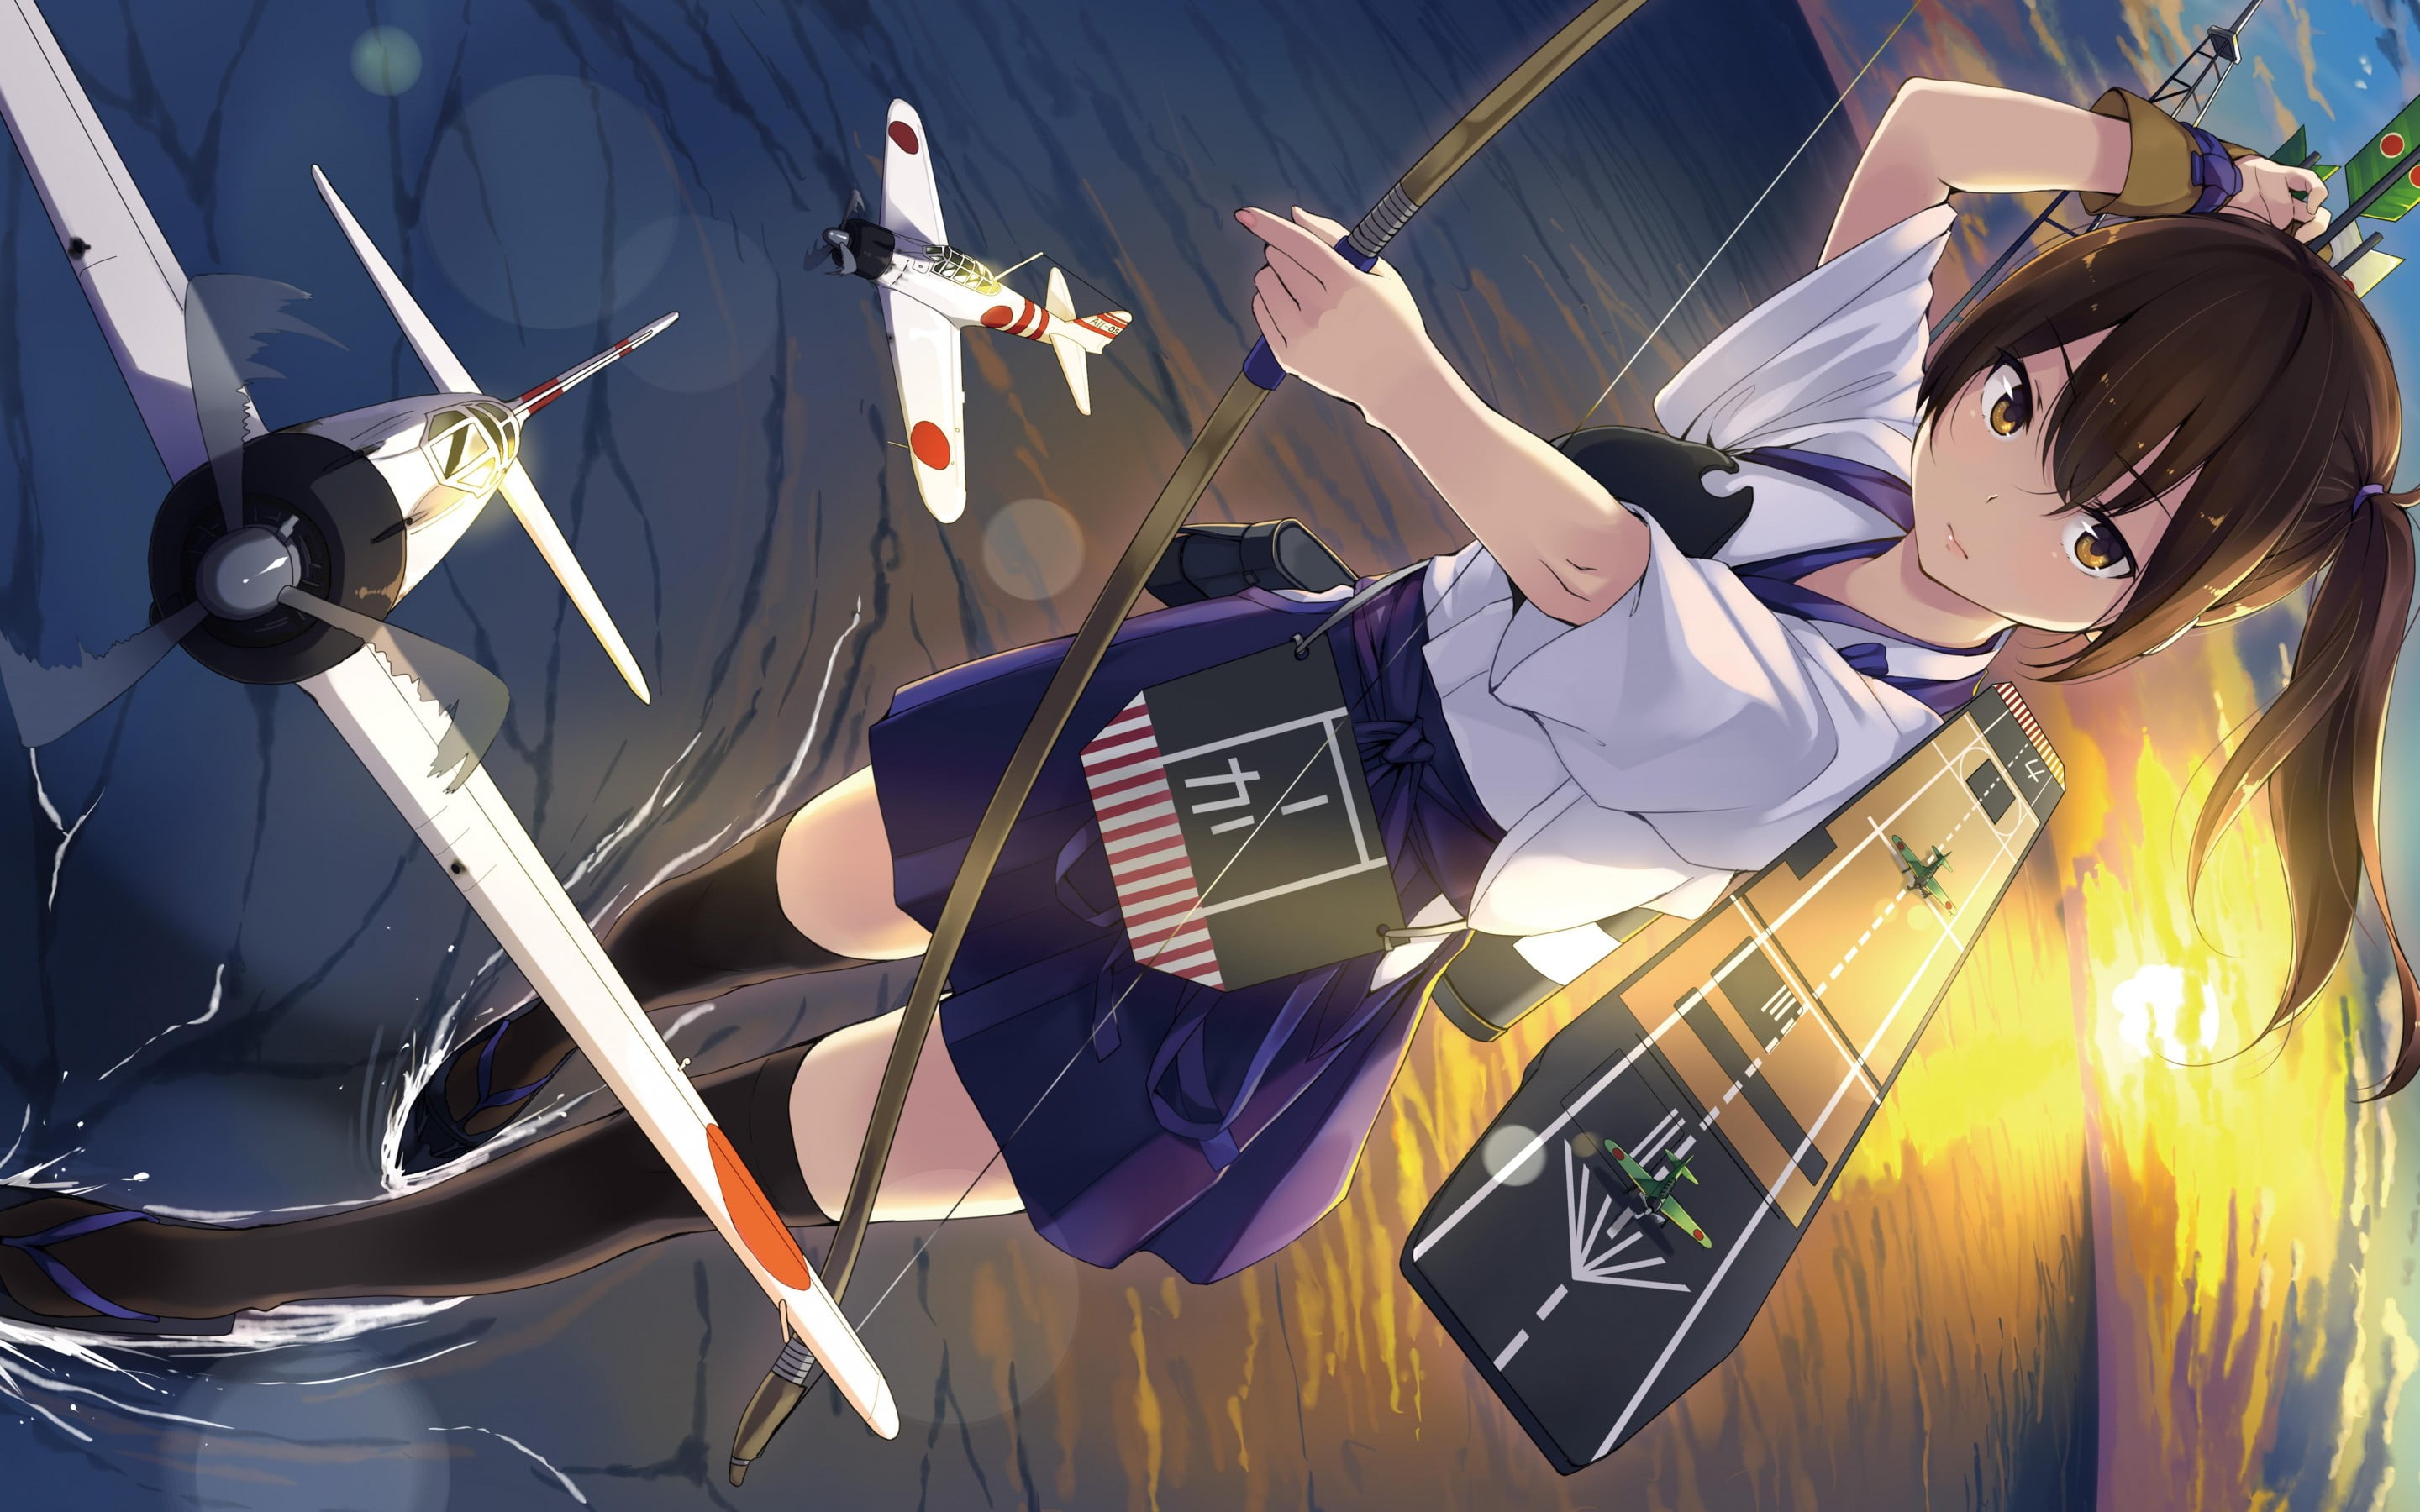 Anime Girl With A Bow And Arrow